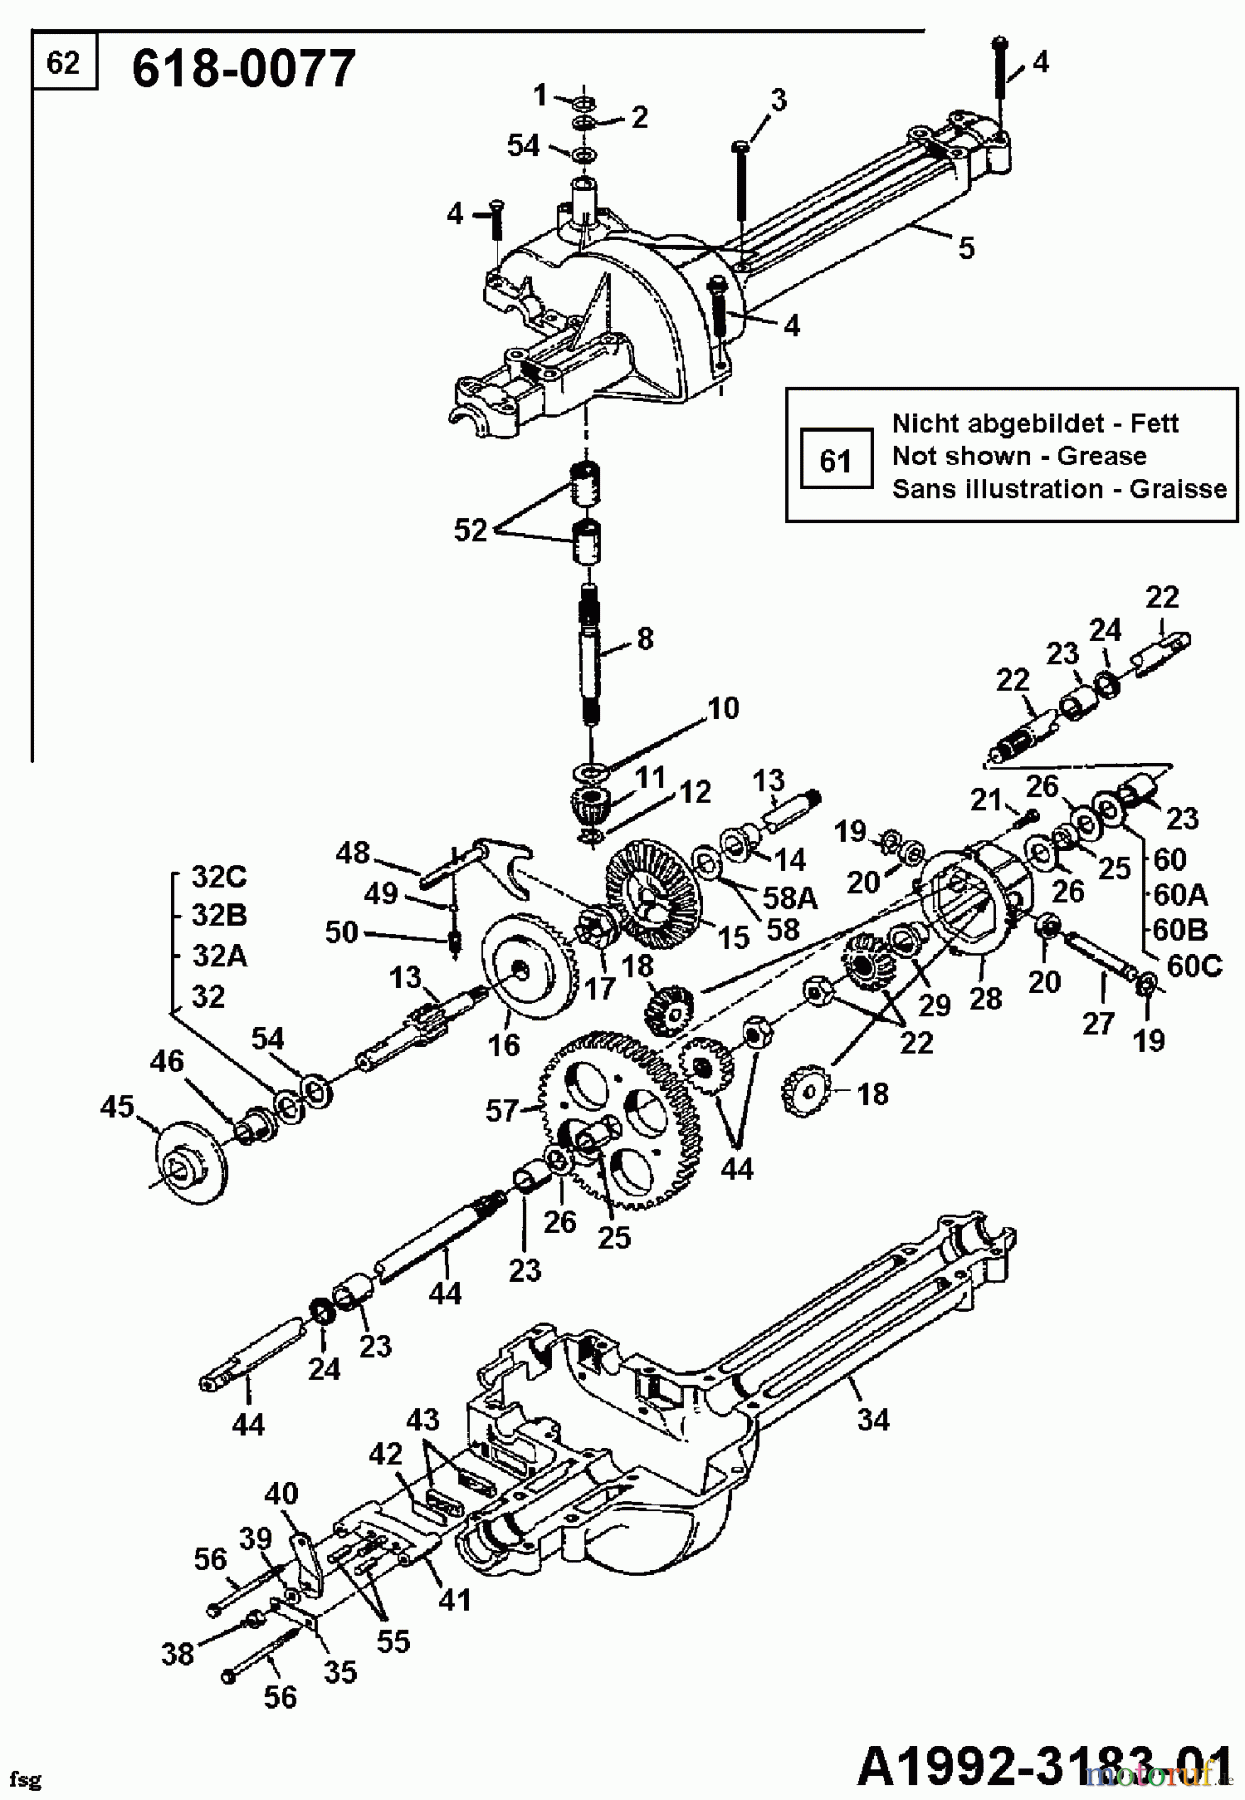  Gardol Rasentraktoren 12/91 133I471E668  (1993) Getriebe 618-0077